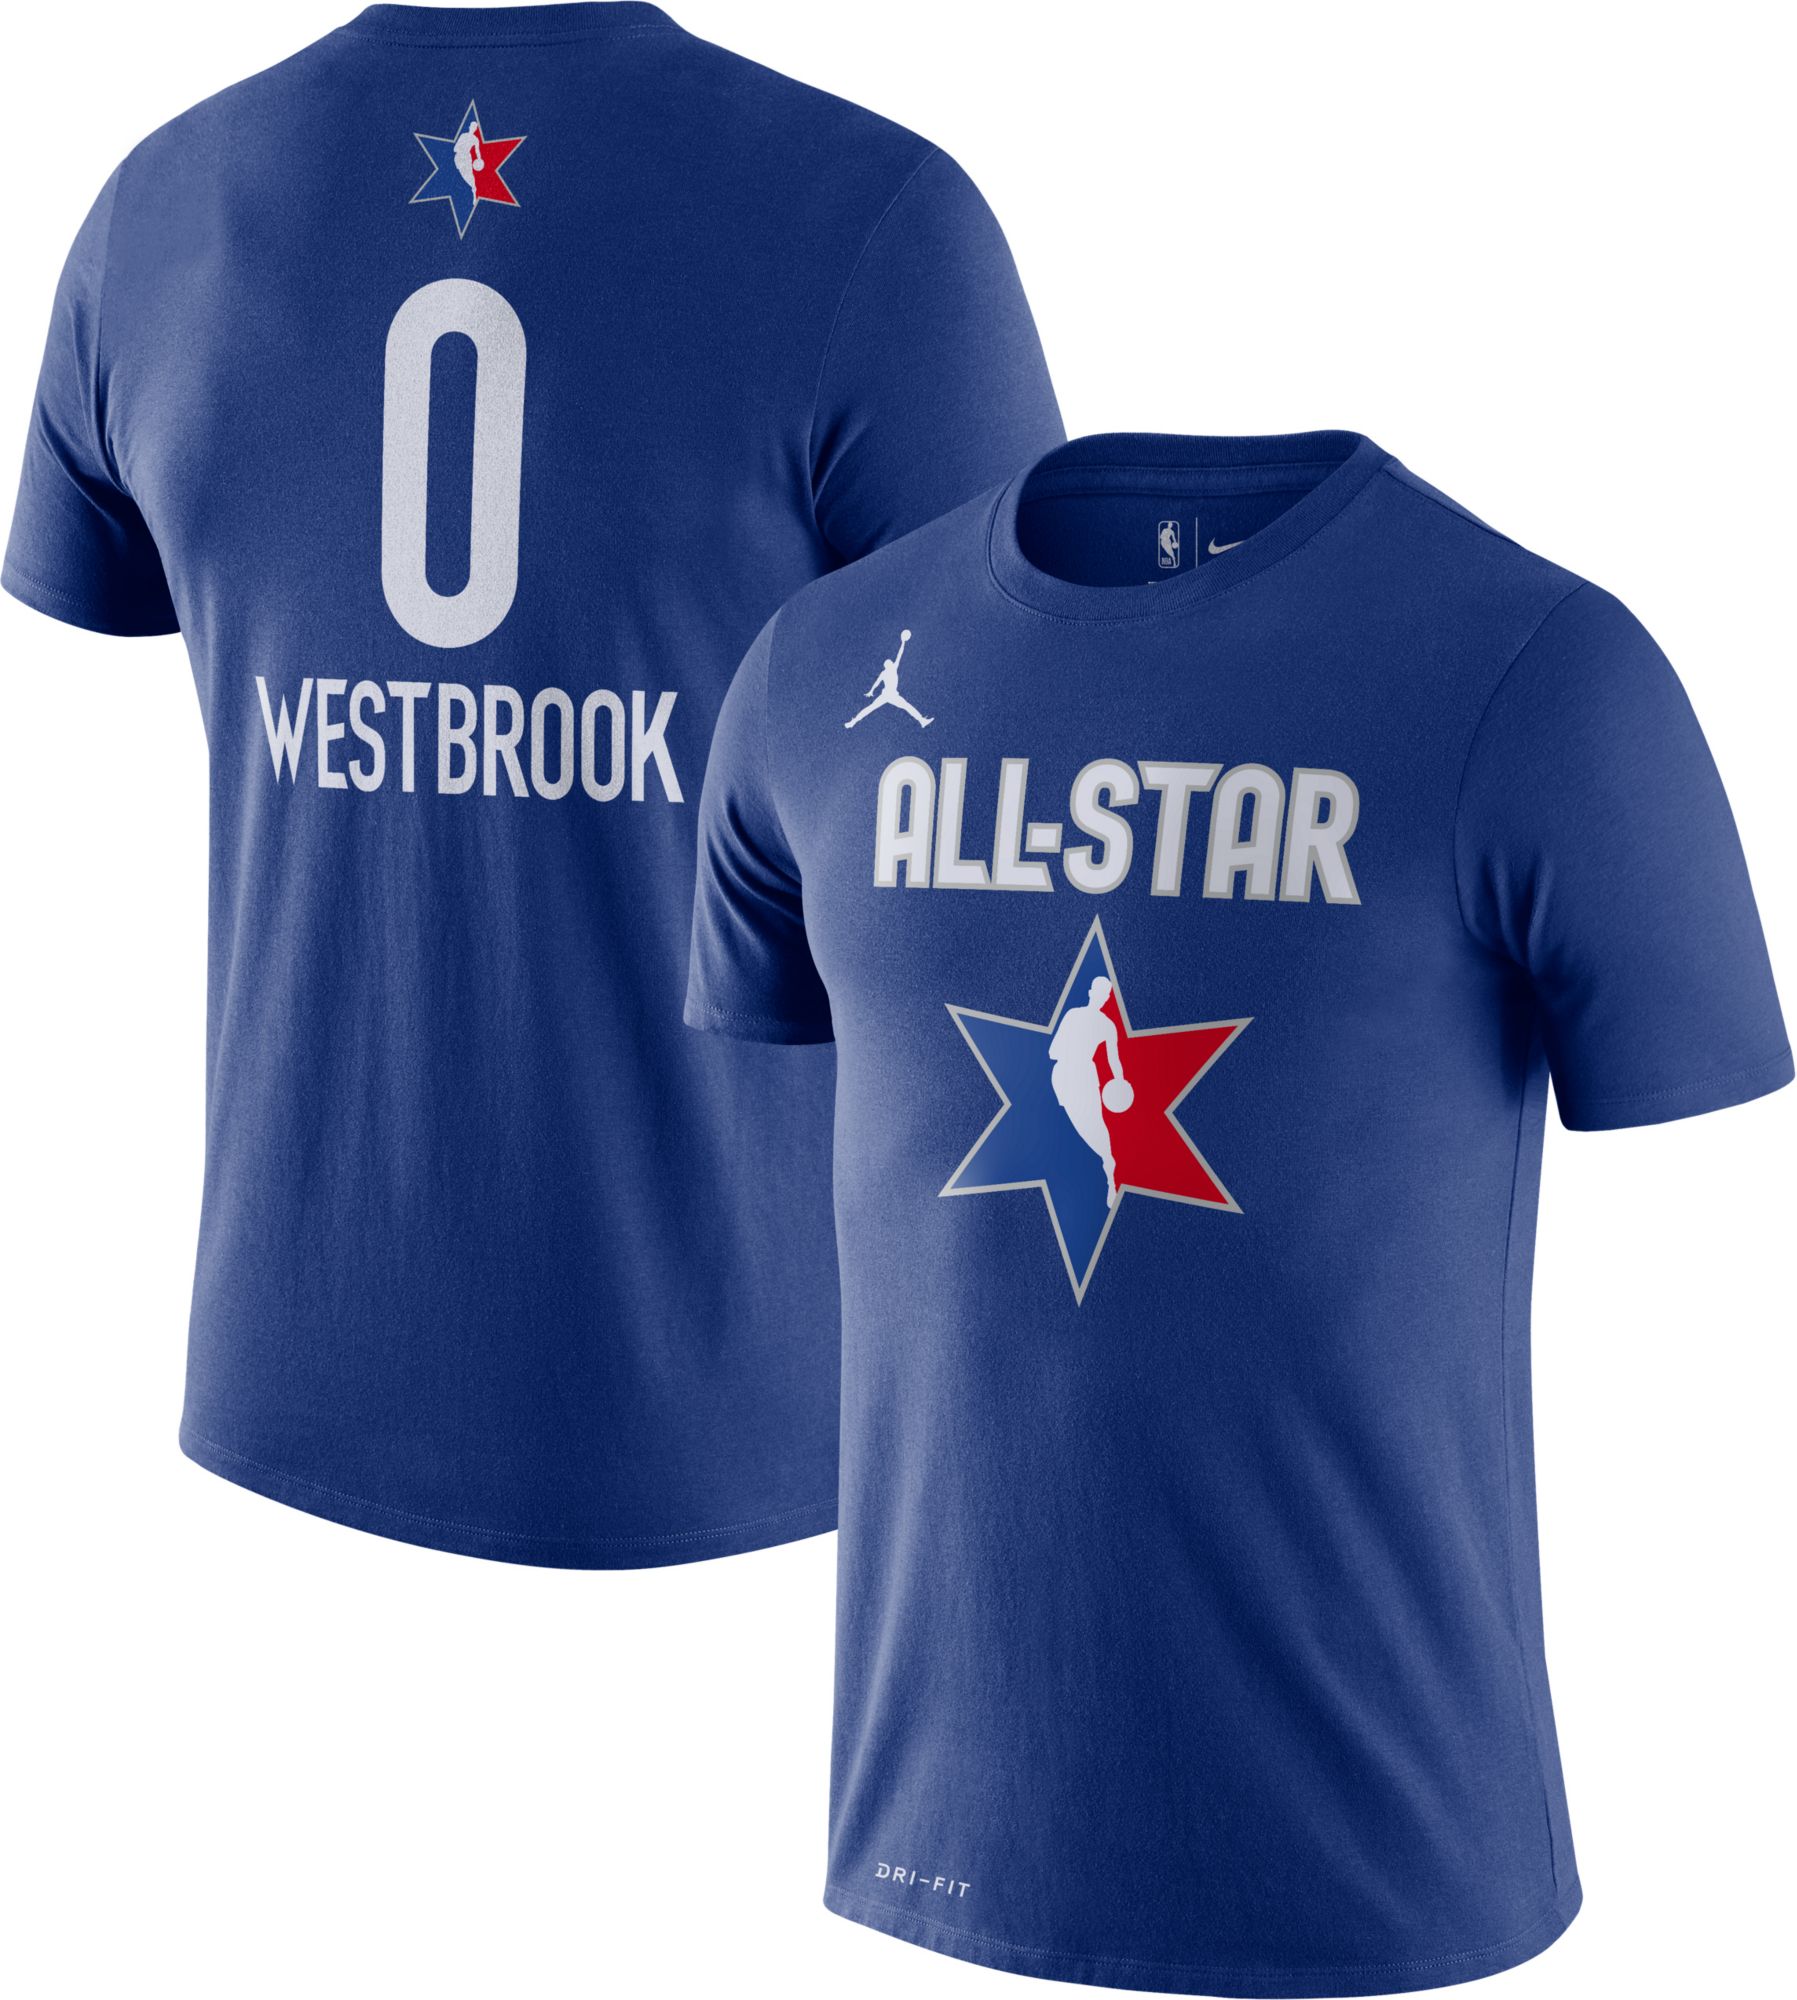 russell westbrook t shirt jersey